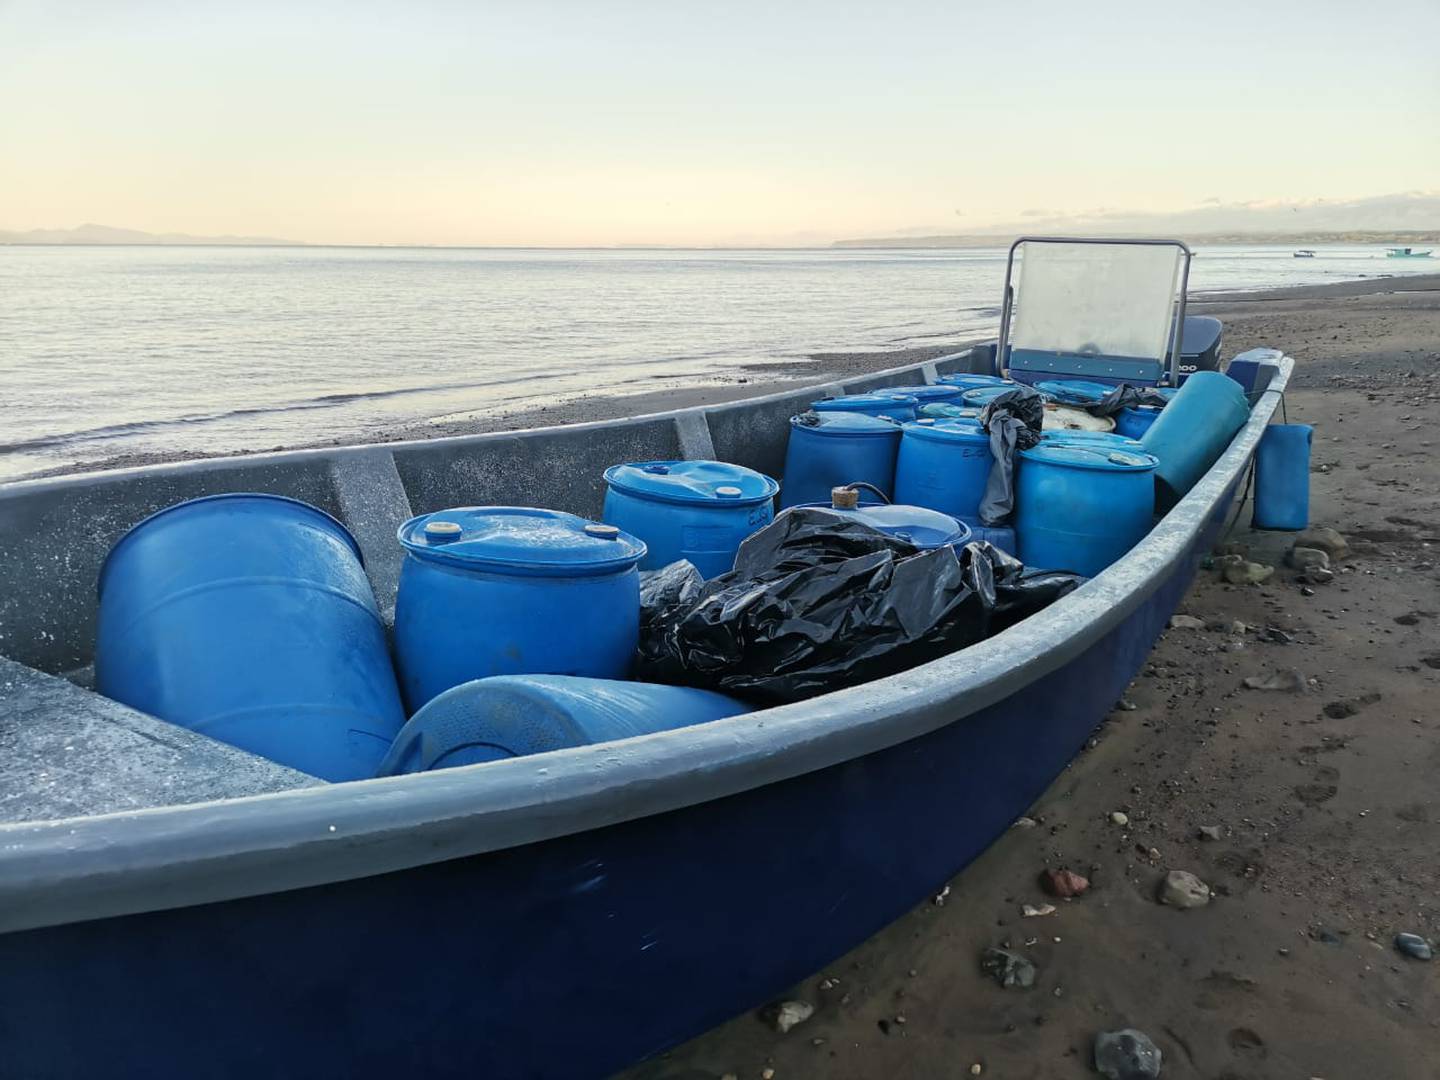 En medio de los tanques de combustible venía la carga de 22 bultos de marihuana que estaban listos para ser desembarcados en Limoncito de Punta Leona, Jacó. Foto; Cortesía MSP.